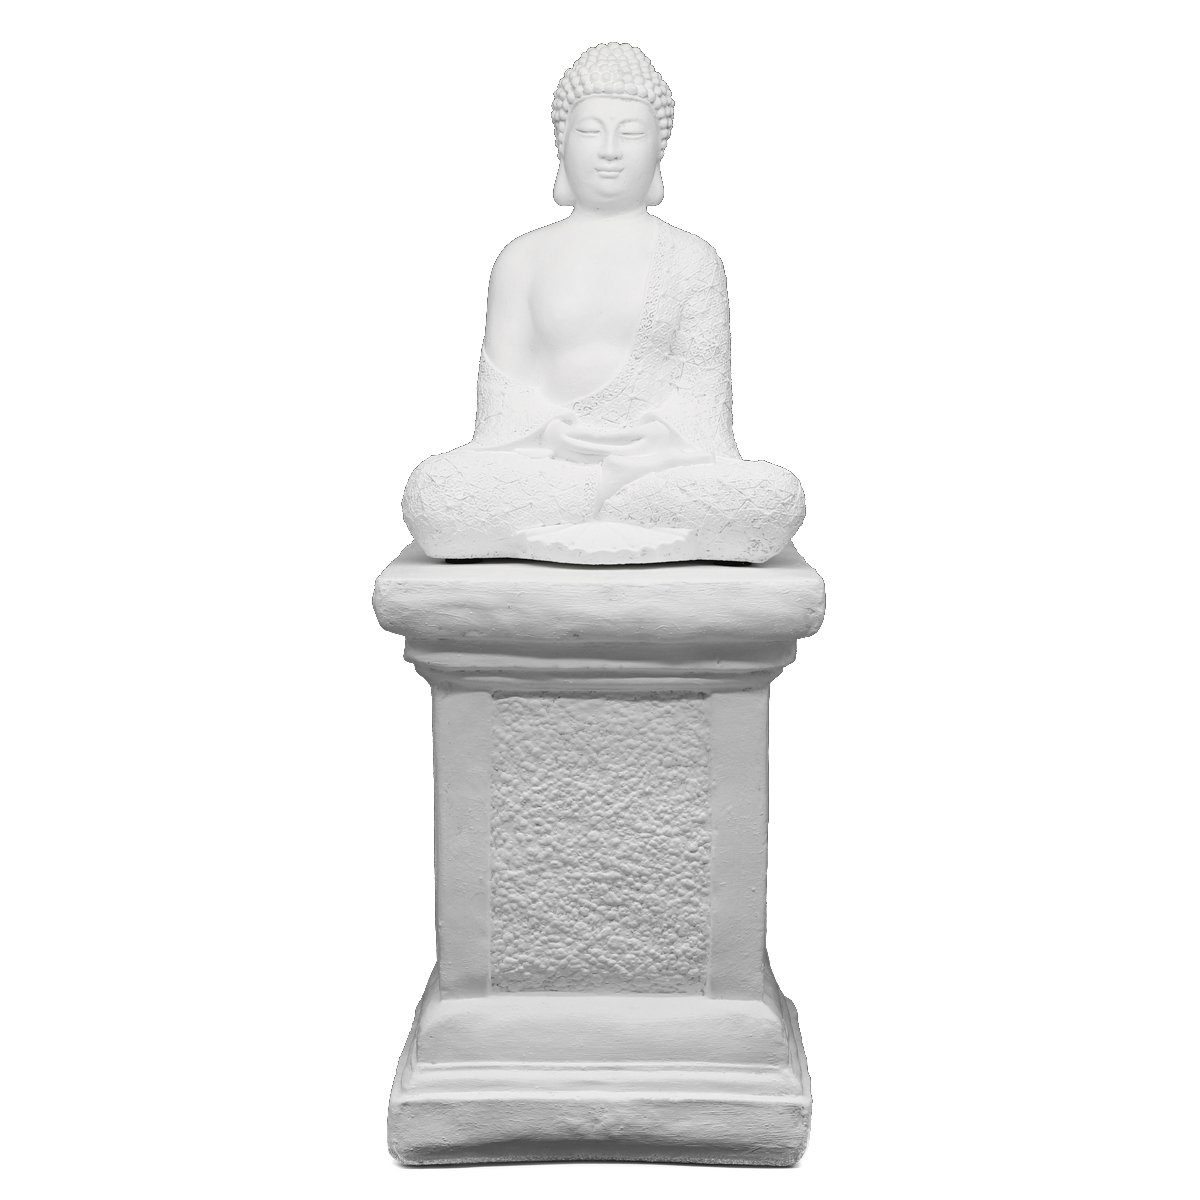 Tiefes Kunsthandwerk Buddhafigur Buddha Figur mit Säule aus Stein - Statue, frostsicher, winterfest, Made in Germany weiß